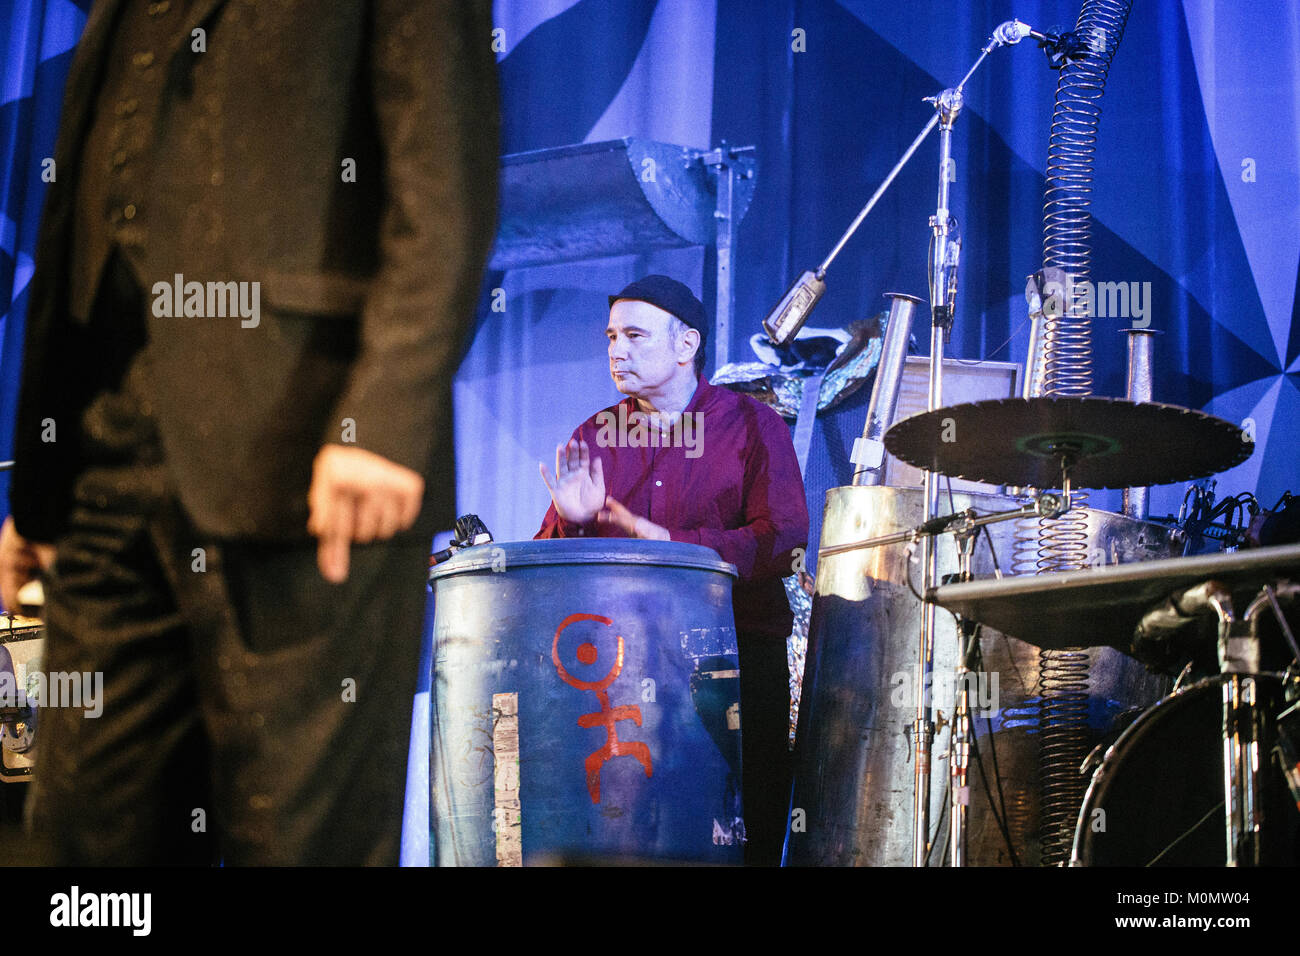 Le groupe industriel allemand Einstürzende Neubauten effectue un concert live au festival de musique danois Roskilde Festival 2015. Ici multi-instrumentaliste unité naturelle Unruh est représenté sur scène. Le Danemark, 03/07 2015. Banque D'Images